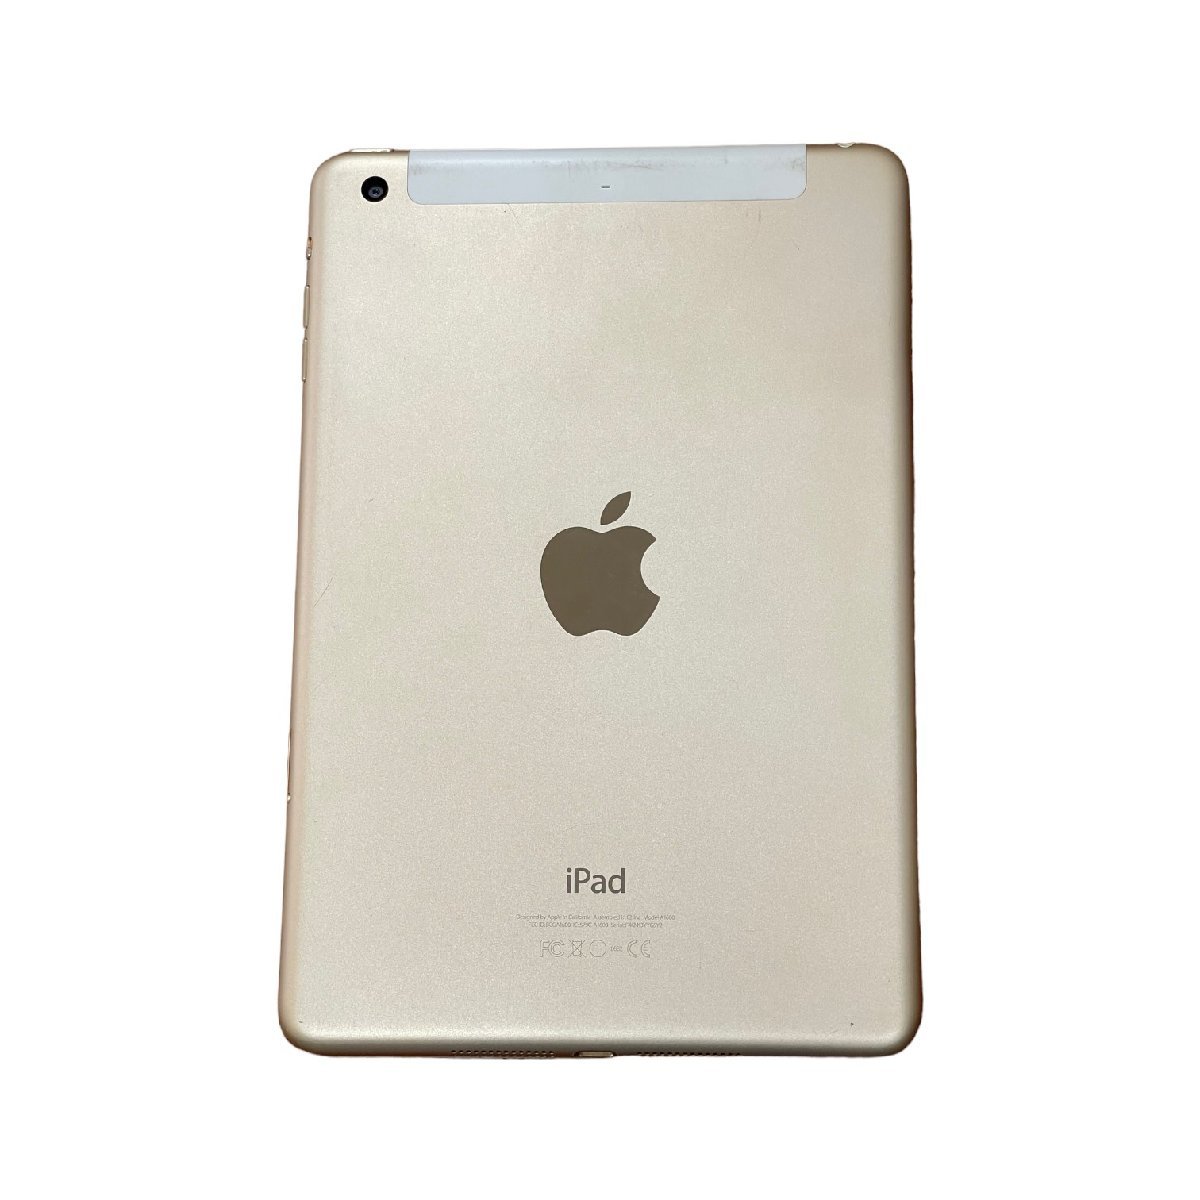 【中古品】初期化済み Apple iPad mini3 16GB 7.9インチ ゴールド MGYR2J/A ドコモ 判定: 〇 箱無 本体のみ L8-843RL_画像5